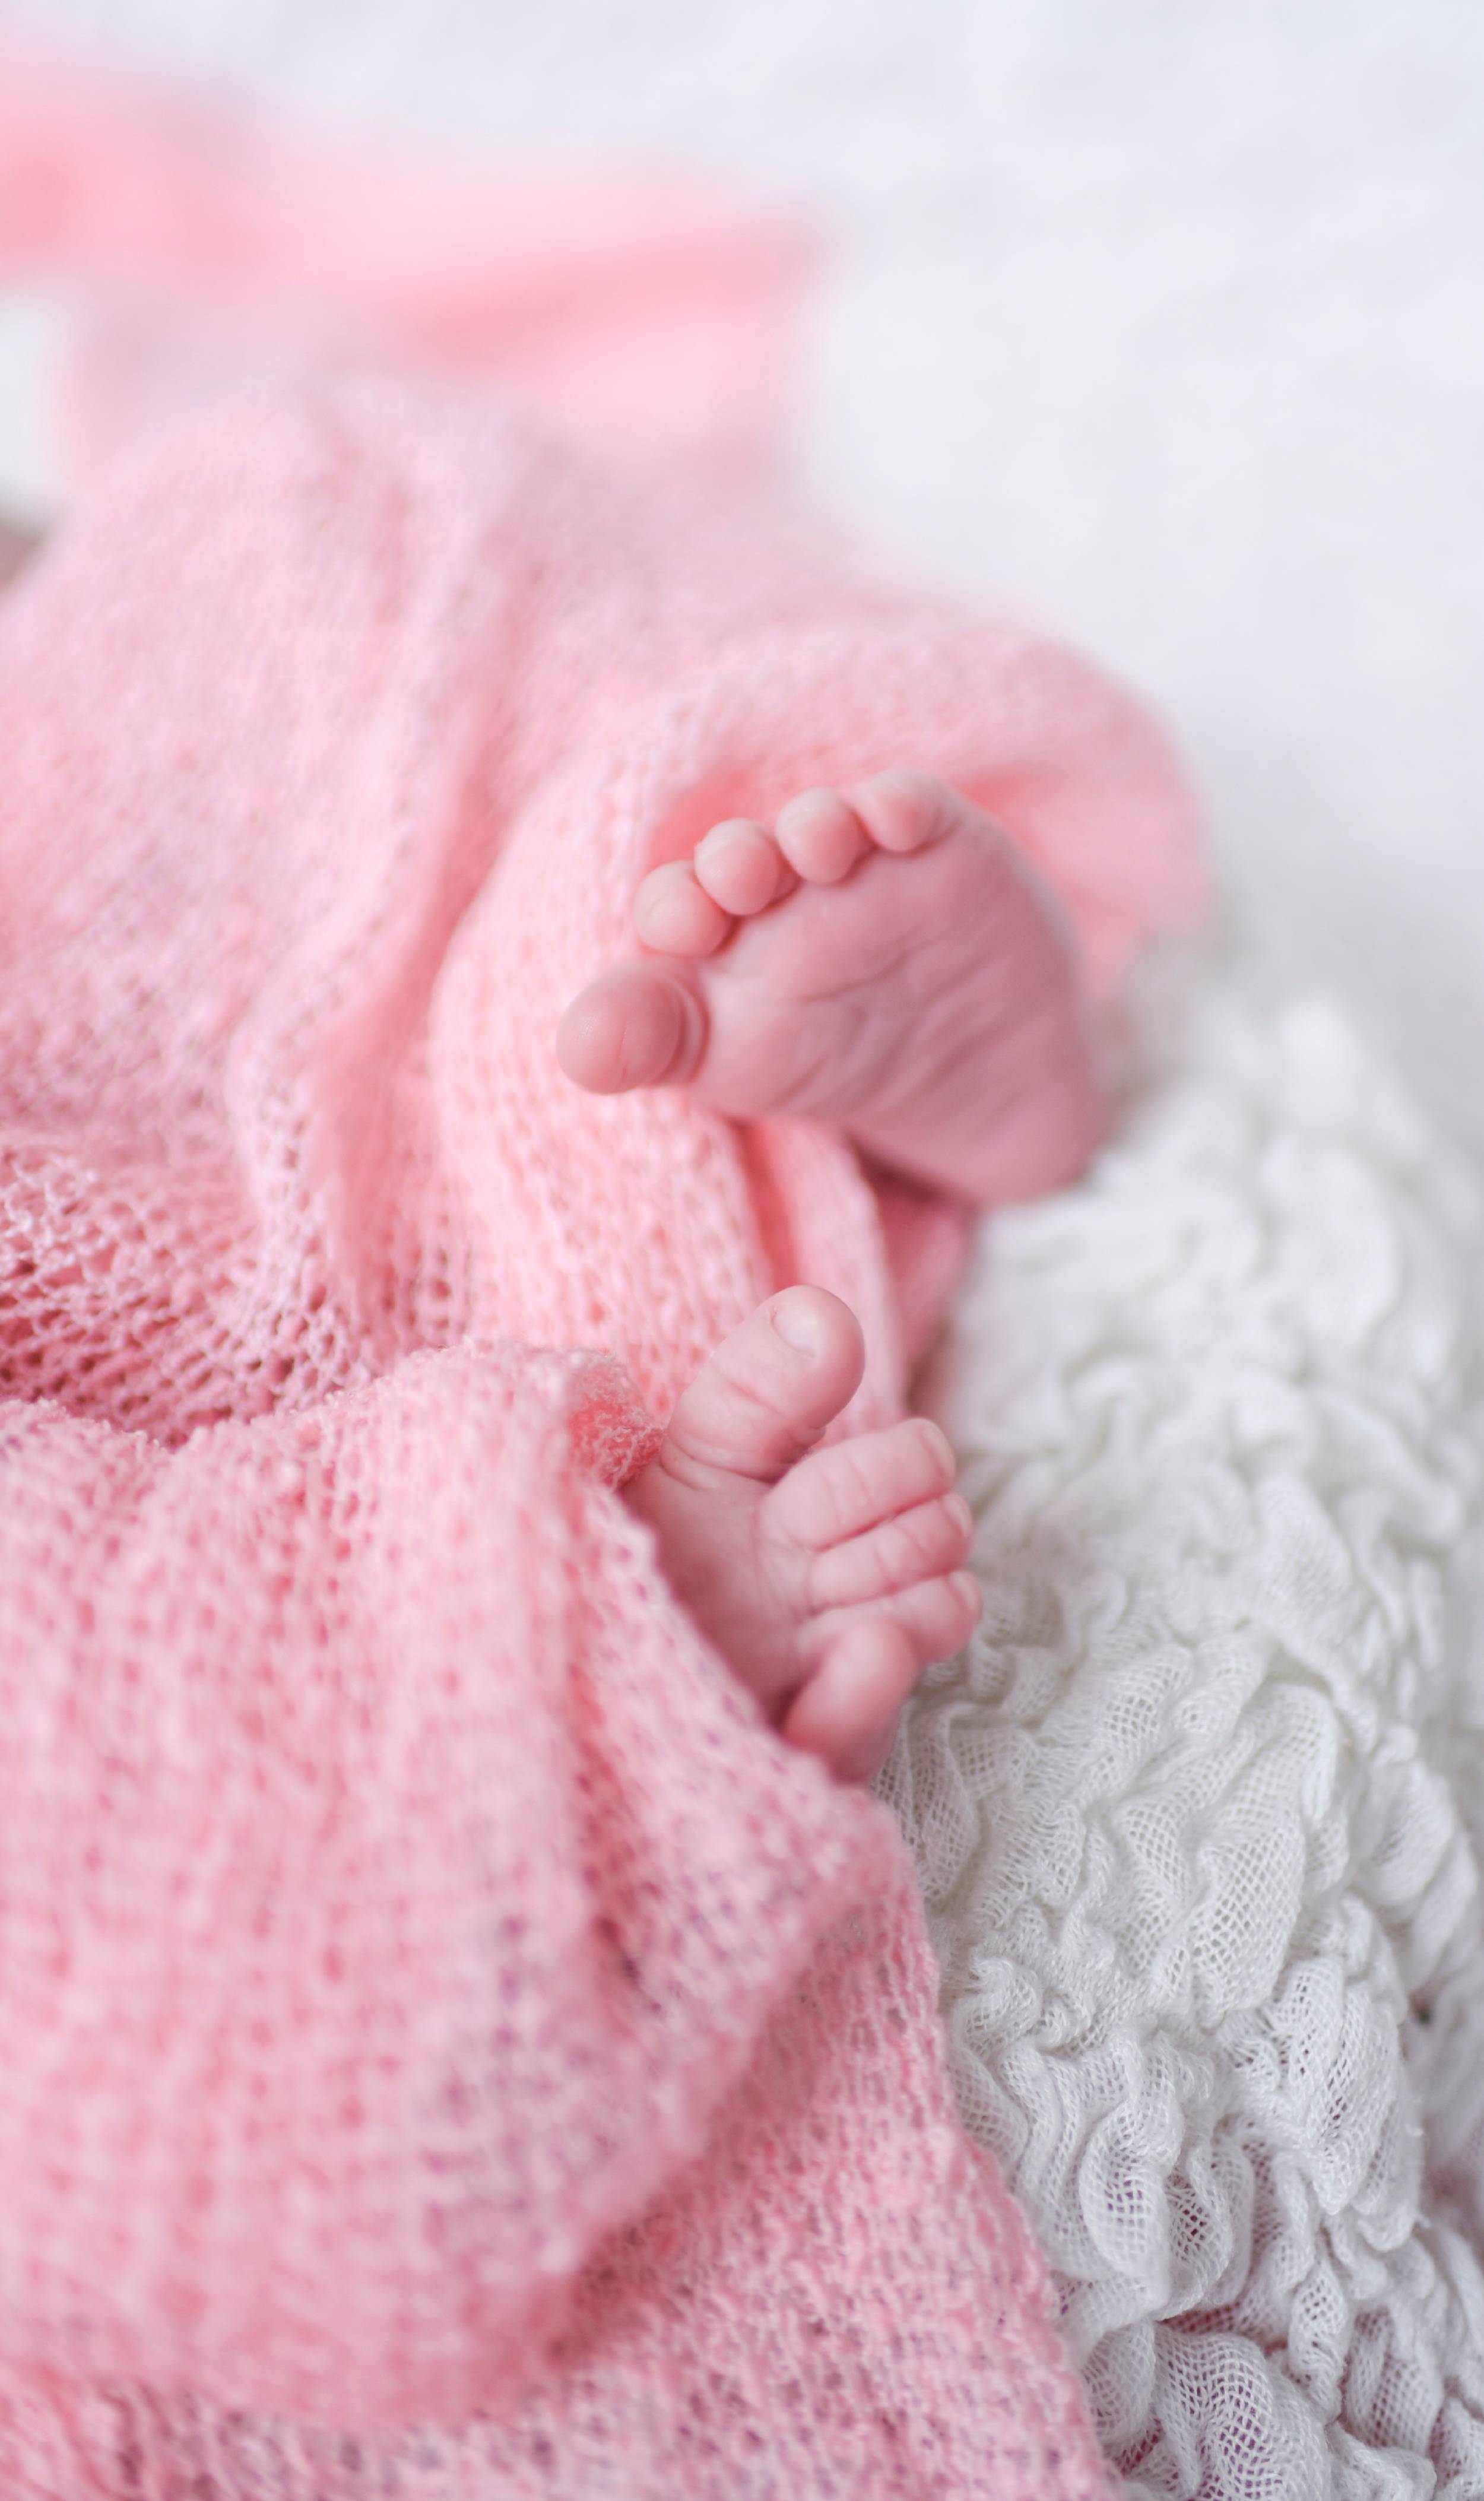 Happix-fotograaf-Rianne-Newborn-_-Baby-fotografie-006_X_lHYEFF88Y.jpg